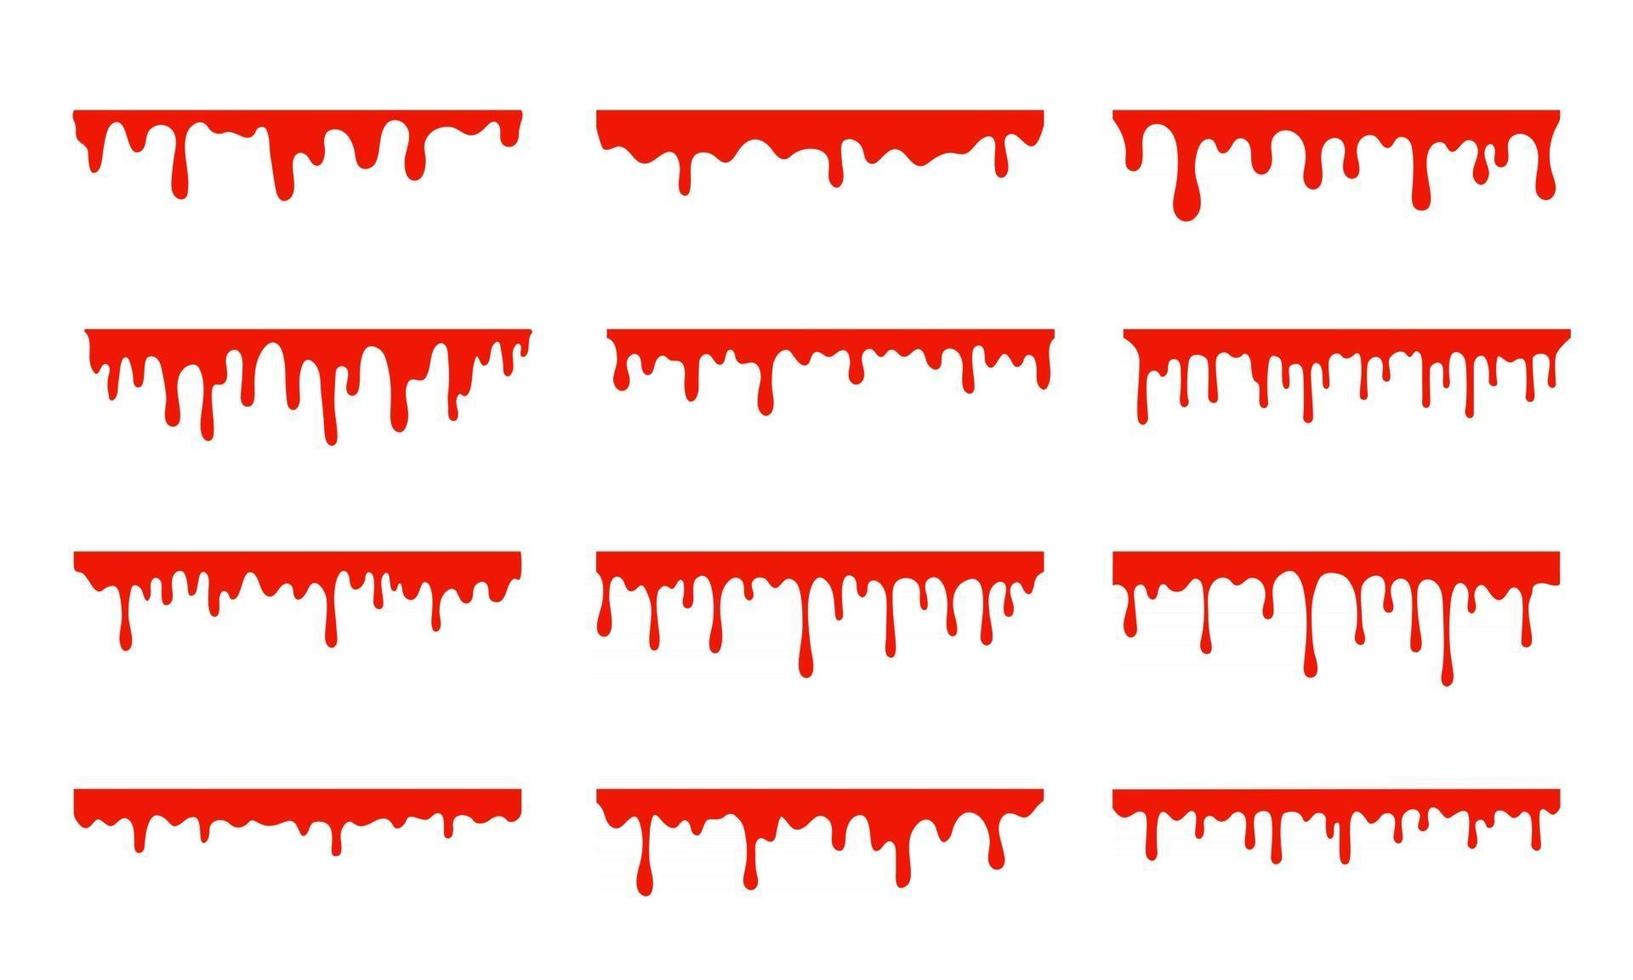 vergossenes Blut. eine rote klebrige Flüssigkeit, die Blut tropfte Halloween-Kriminalität-Konzept. vektor